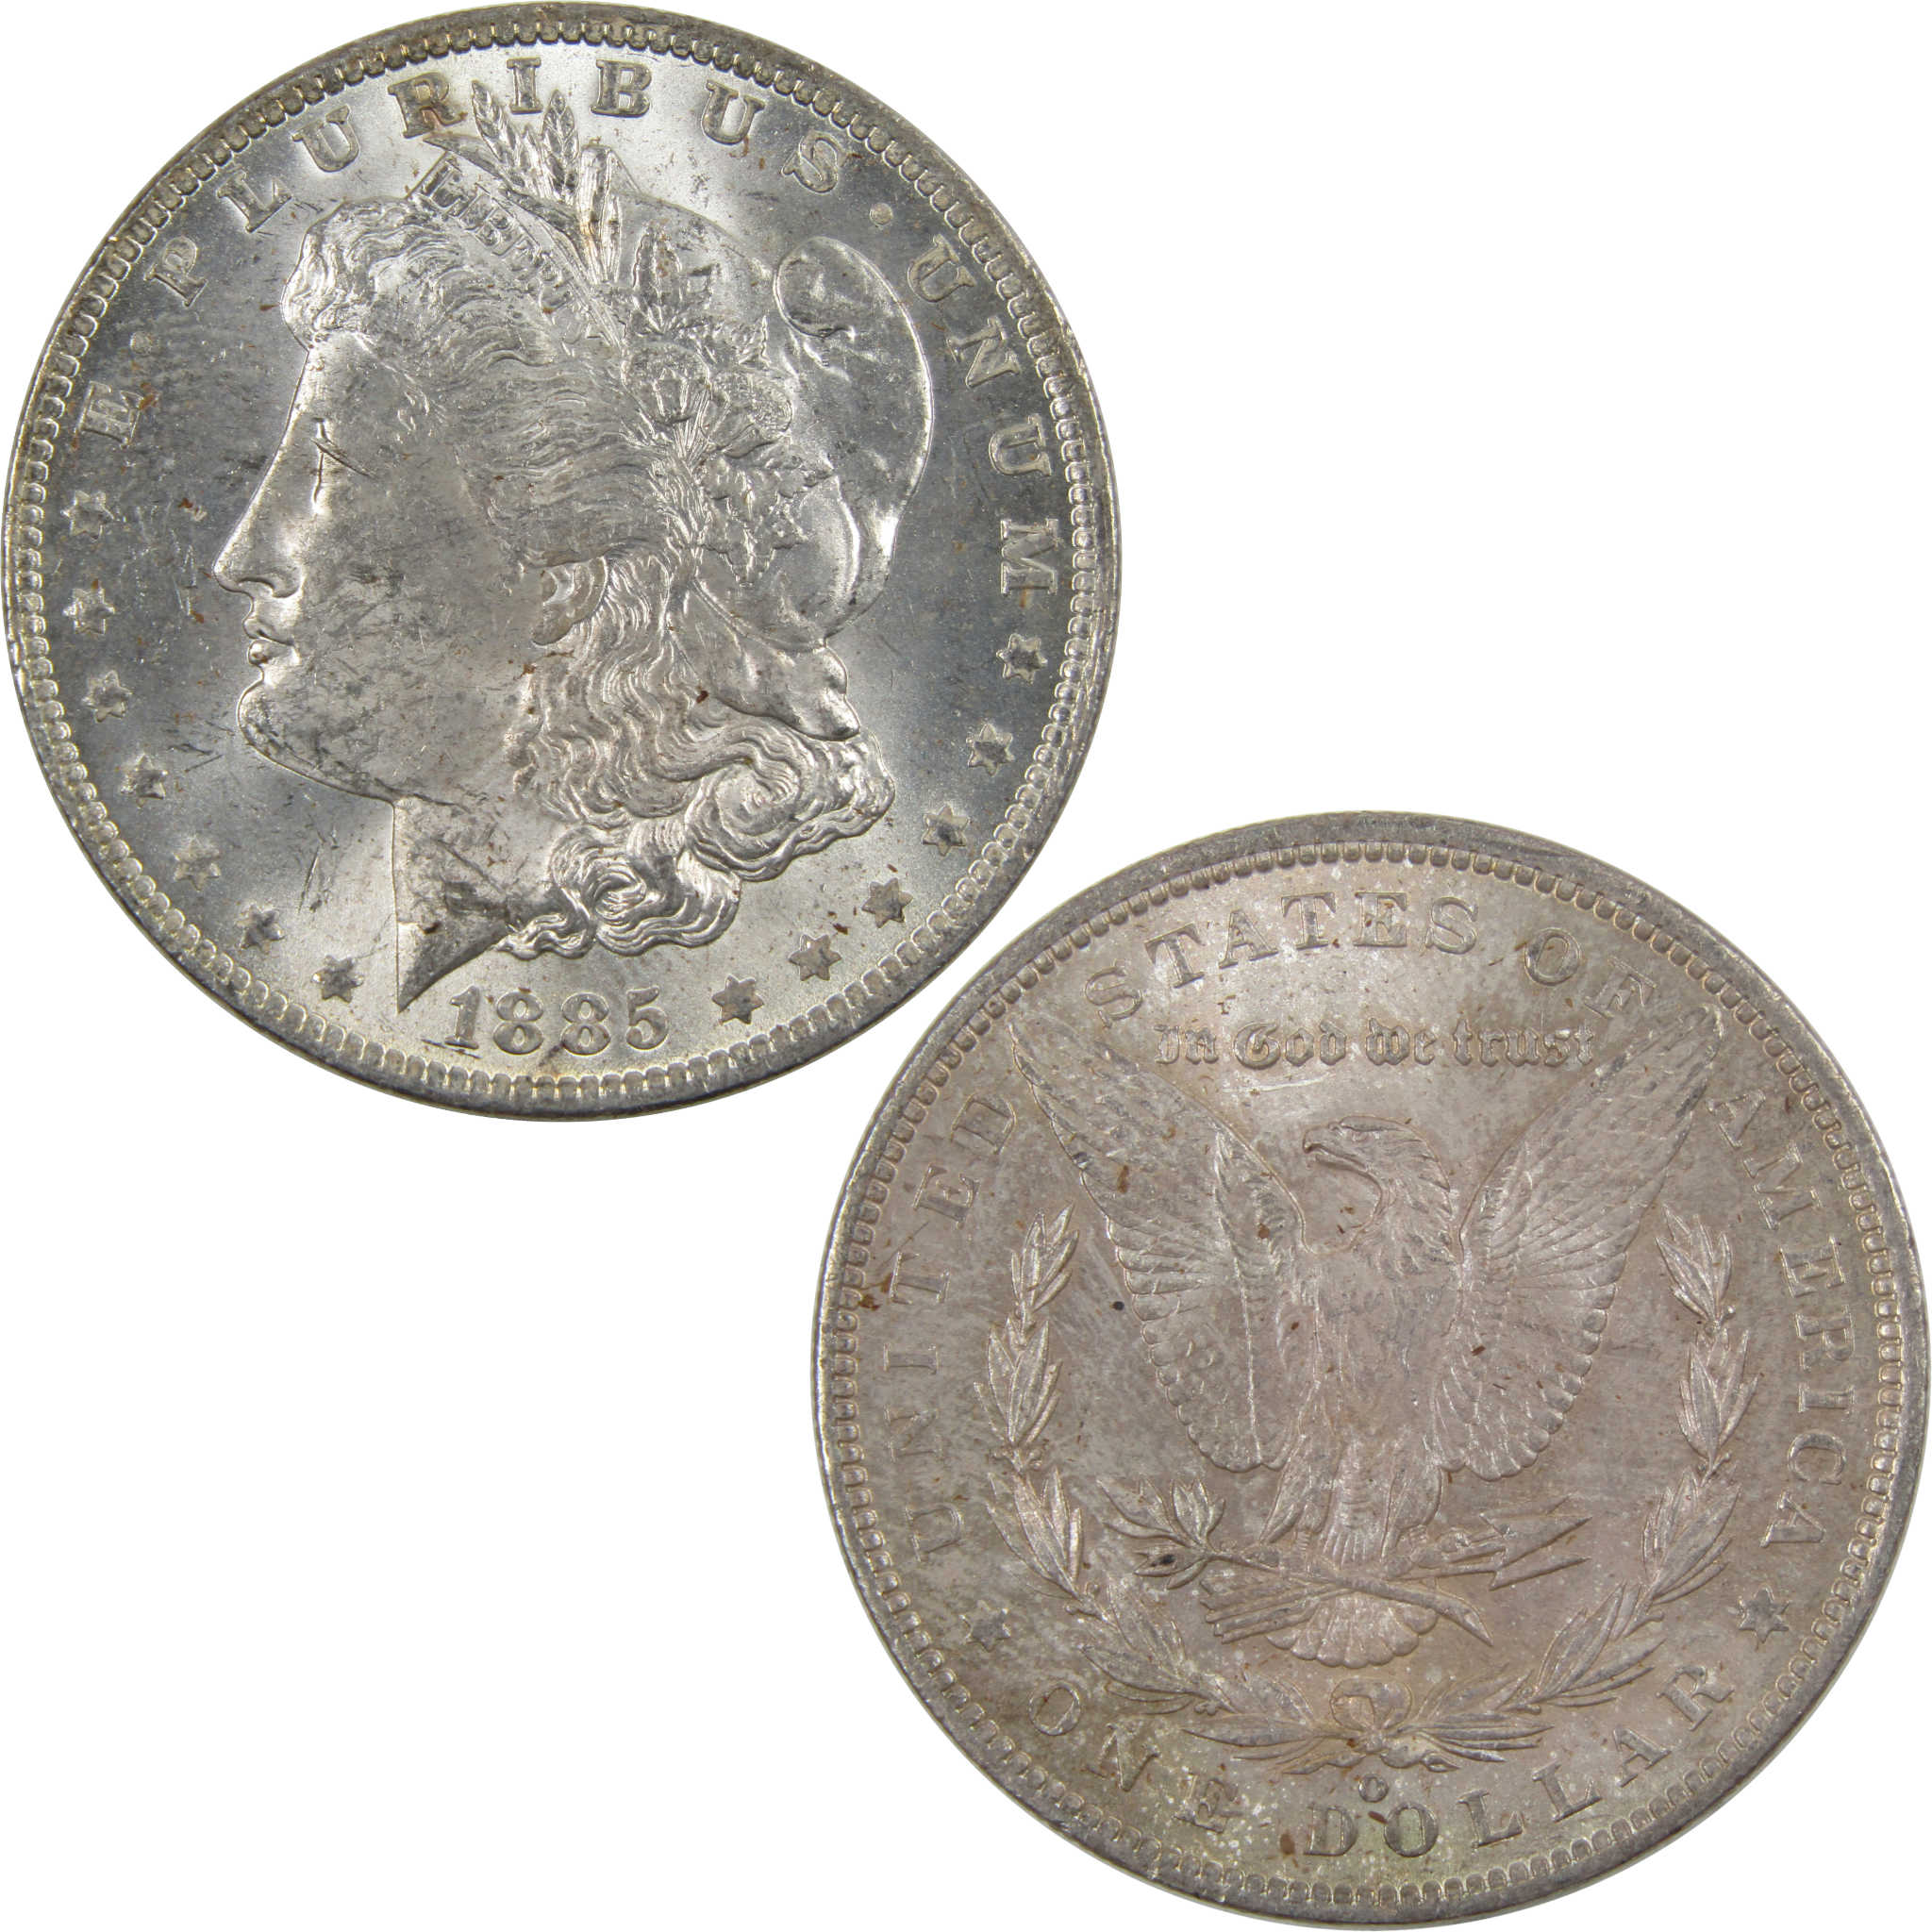 1885 O Morgan Dollar BU Uncirculated 90% Silver $1 Coin SKU:I4236 - Morgan coin - Morgan silver dollar - Morgan silver dollar for sale - Profile Coins &amp; Collectibles